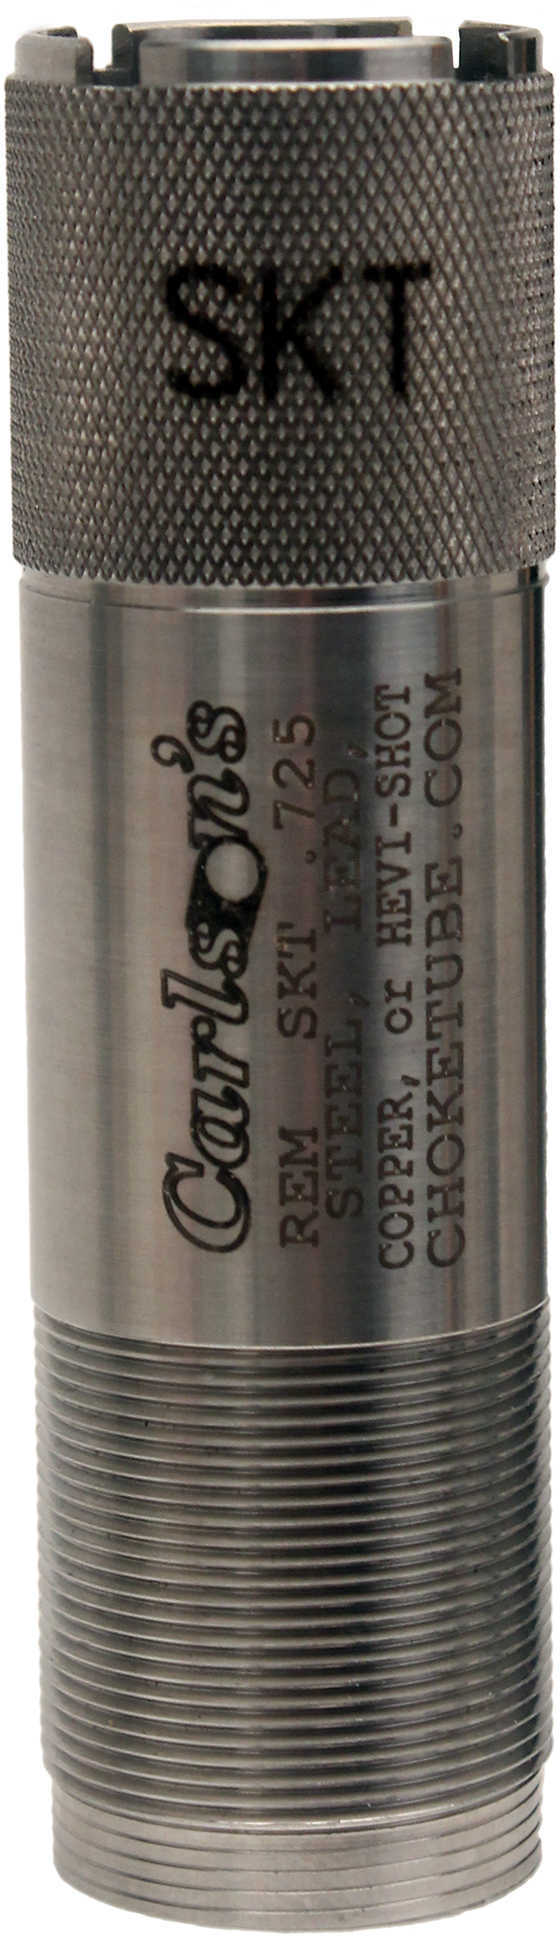 Carlsons Remington Sporting Clay Choke Tubes 12 Gauge, Skeet 13364